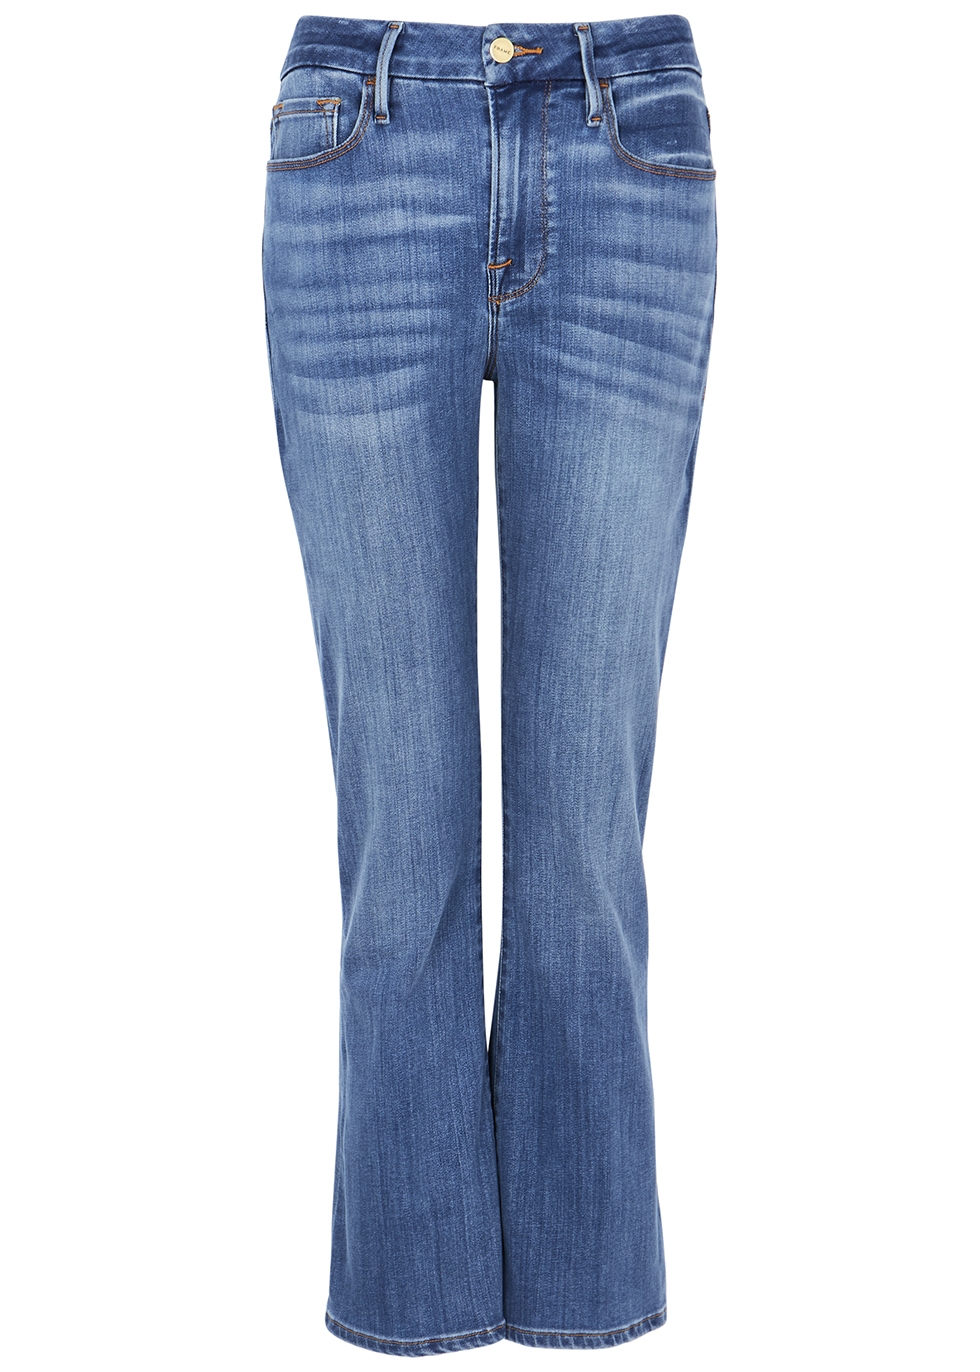 Le Crop Mini Boot blue jeans